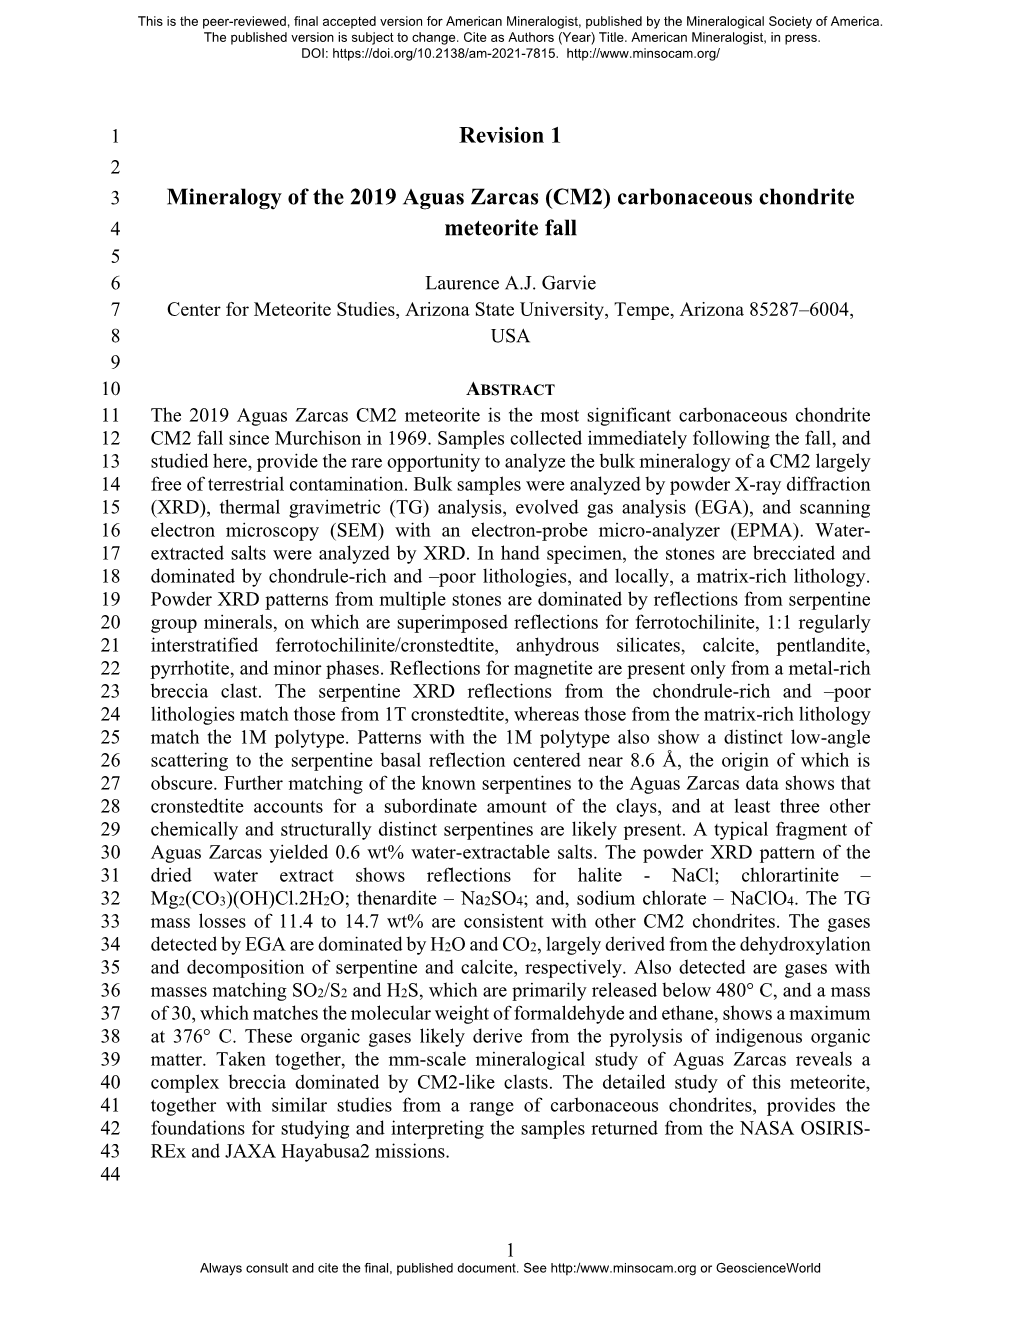 Revision 1 Mineralogy of the 2019 Aguas Zarcas (CM2) Carbonaceous